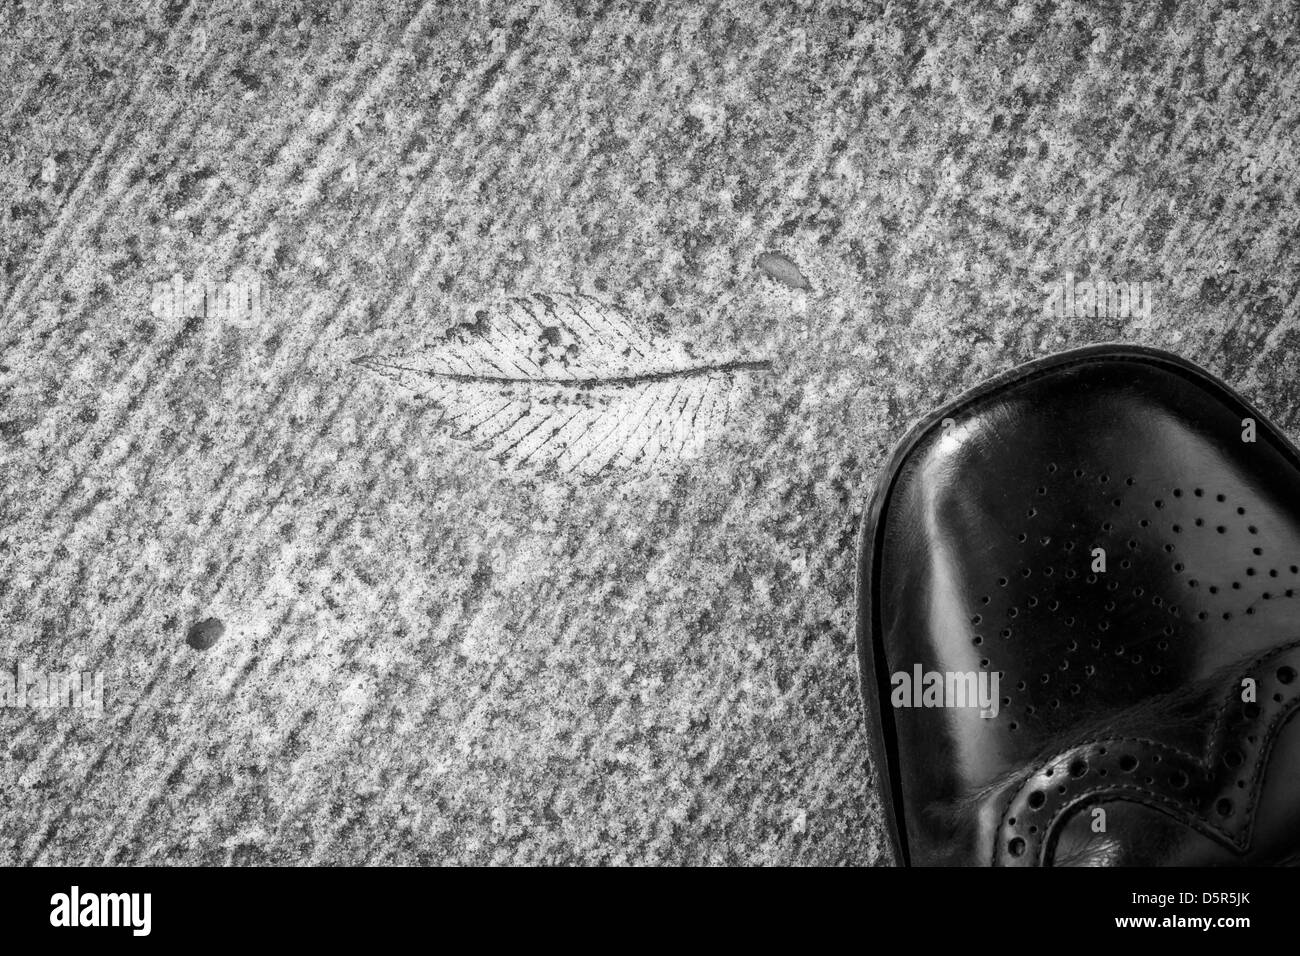 Ad intaglio accidentali: caduta di una foglia ha lasciato la sua impronta sul cemento del marciapiede. Foto Stock